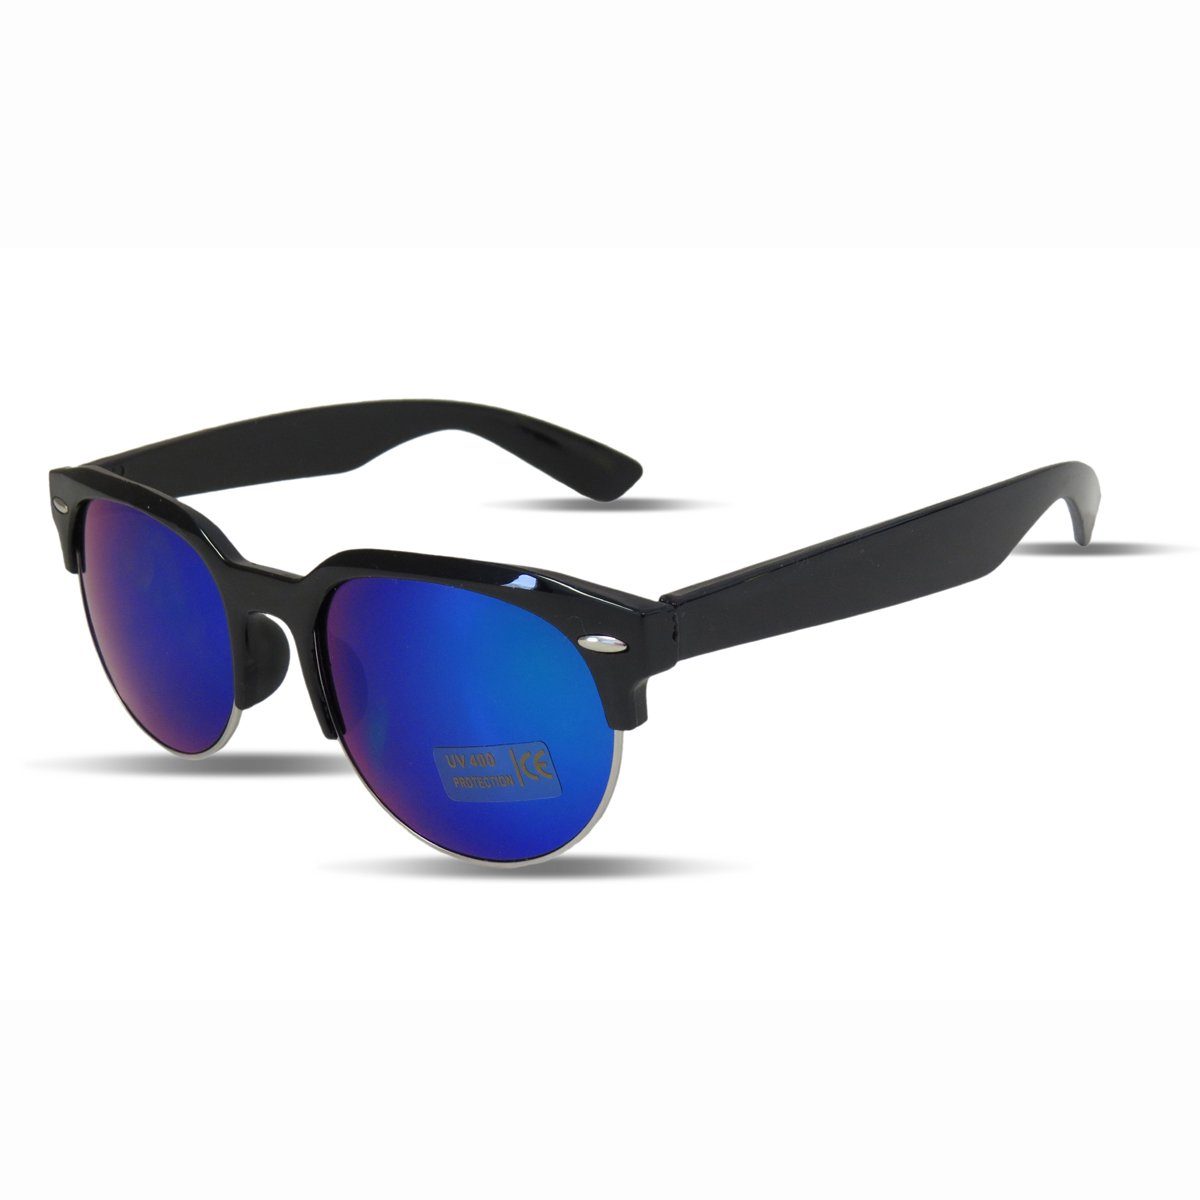 Sonia schwarz-blau Sommer Modern Verspiegelt Sonnenbrille Onesize Klassisch Originelli Sonnenbrille